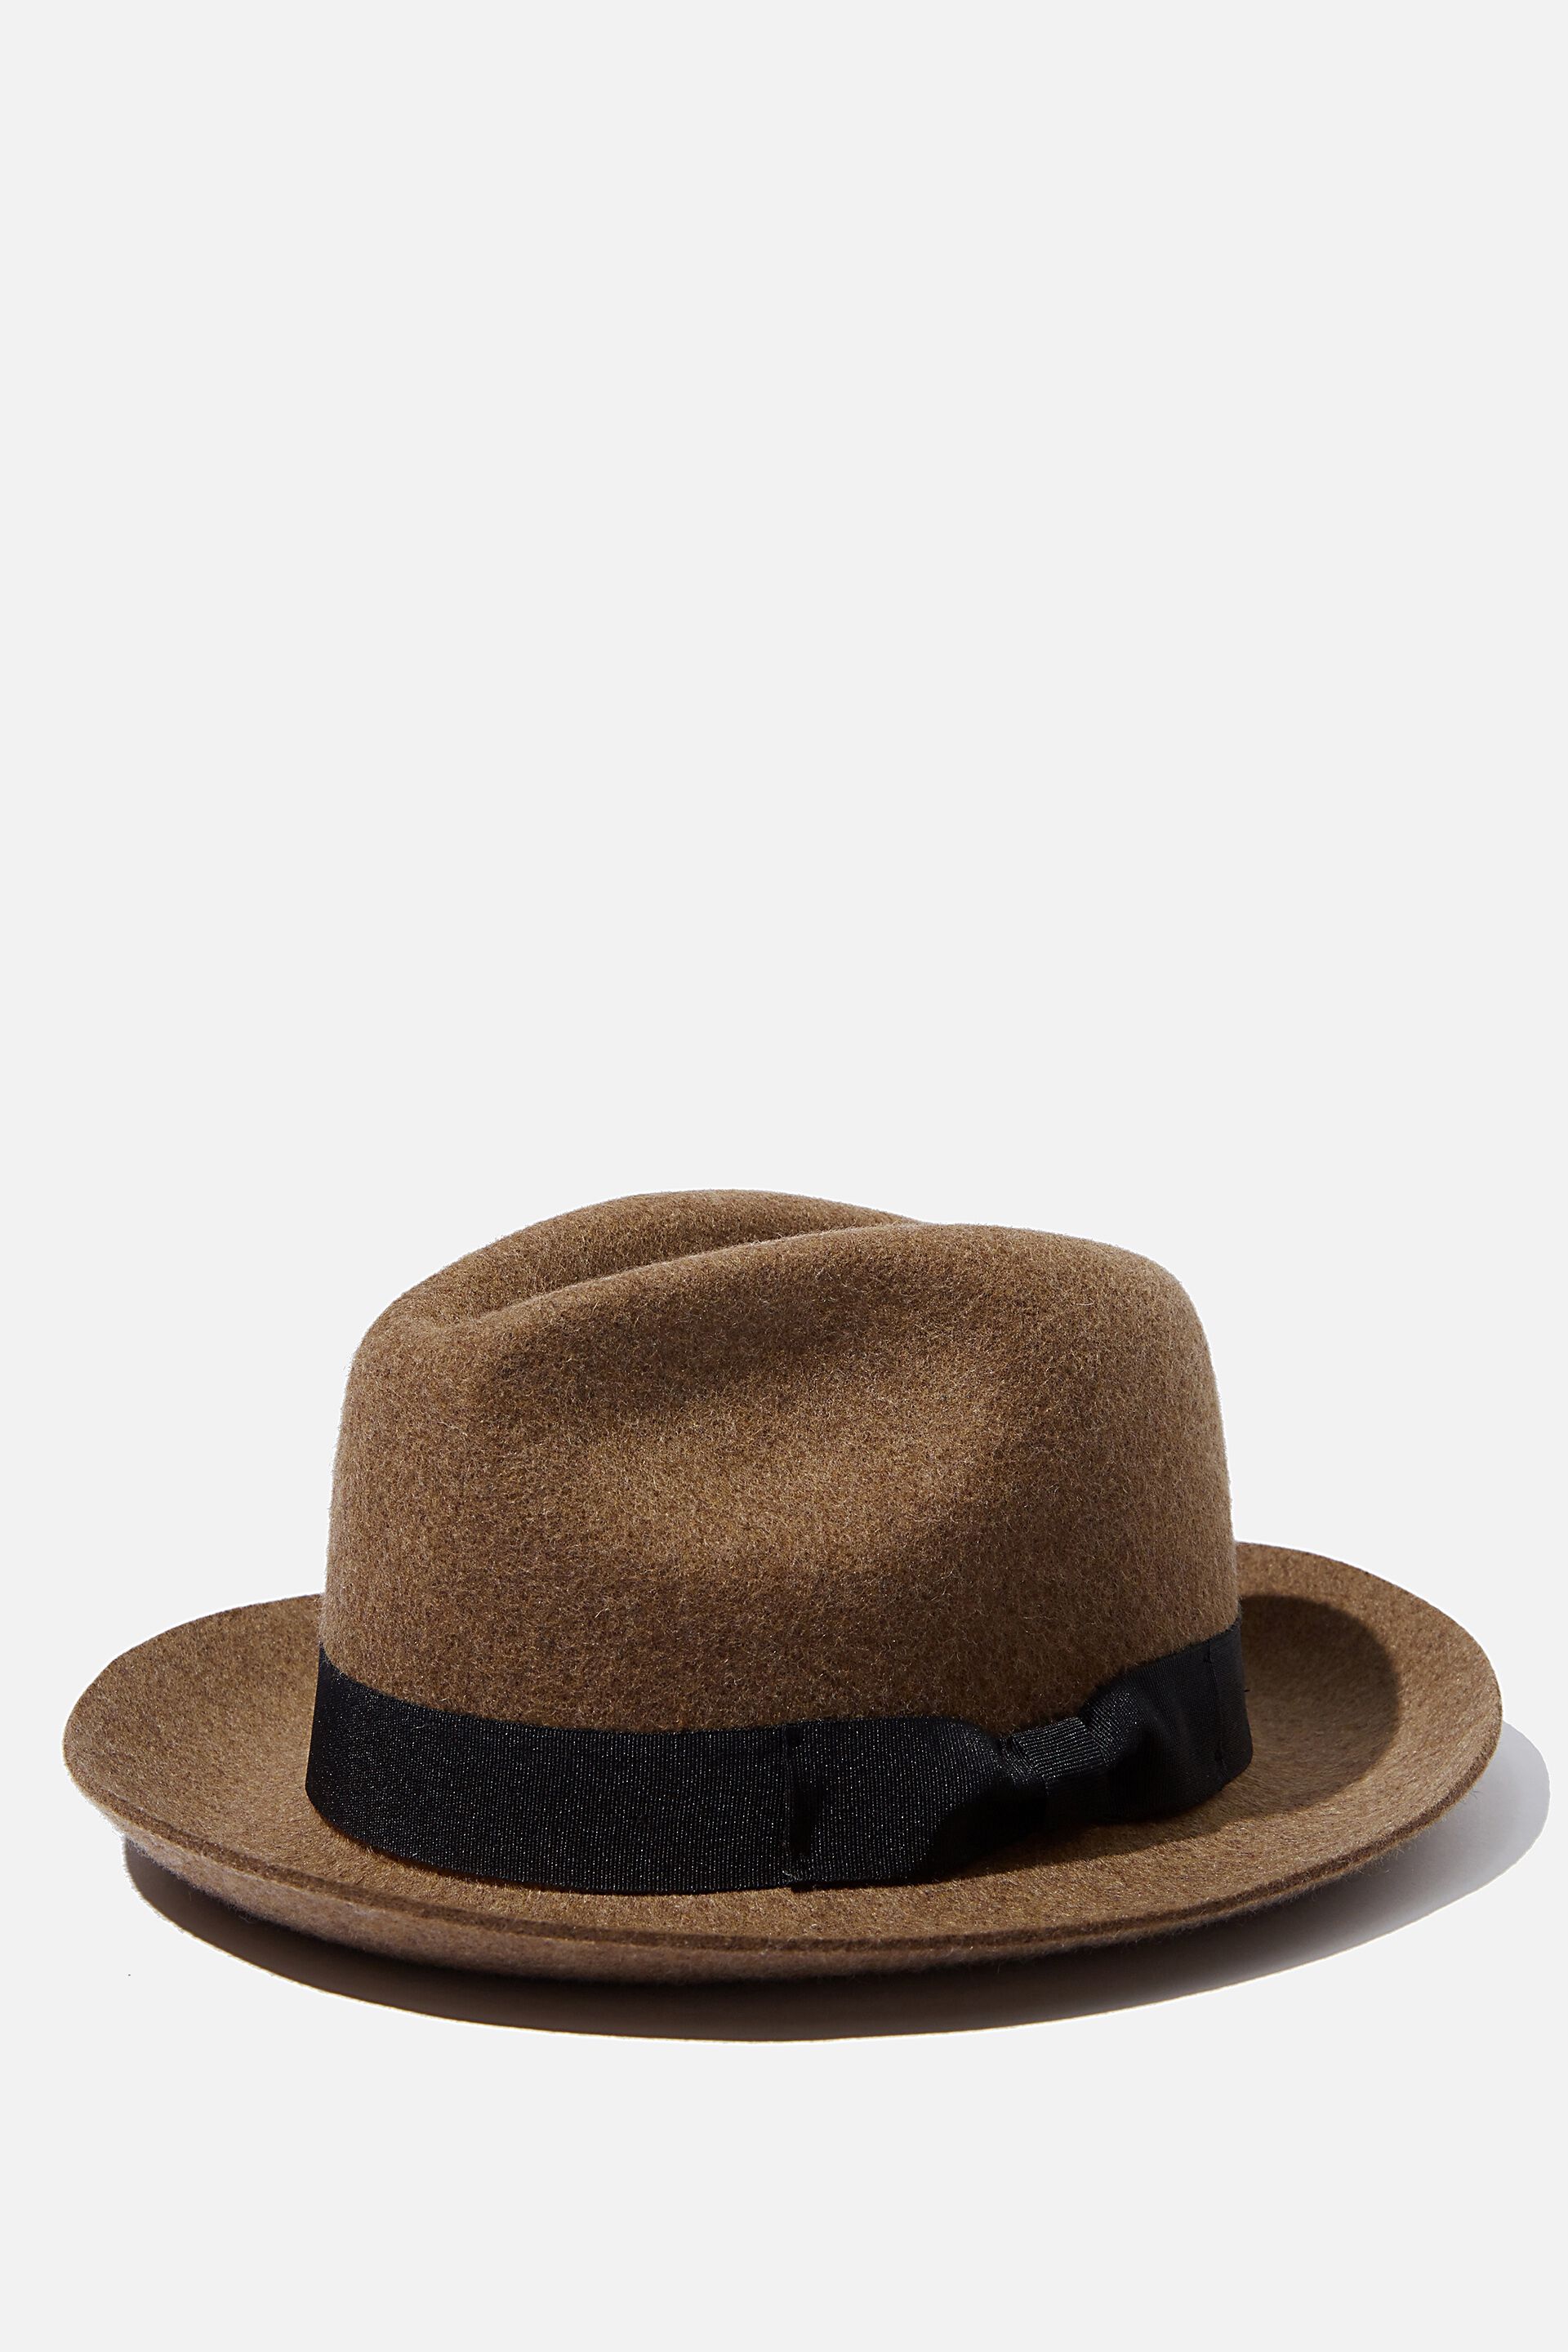 Men's Short Brim Hats - Two Roads Hat Co.